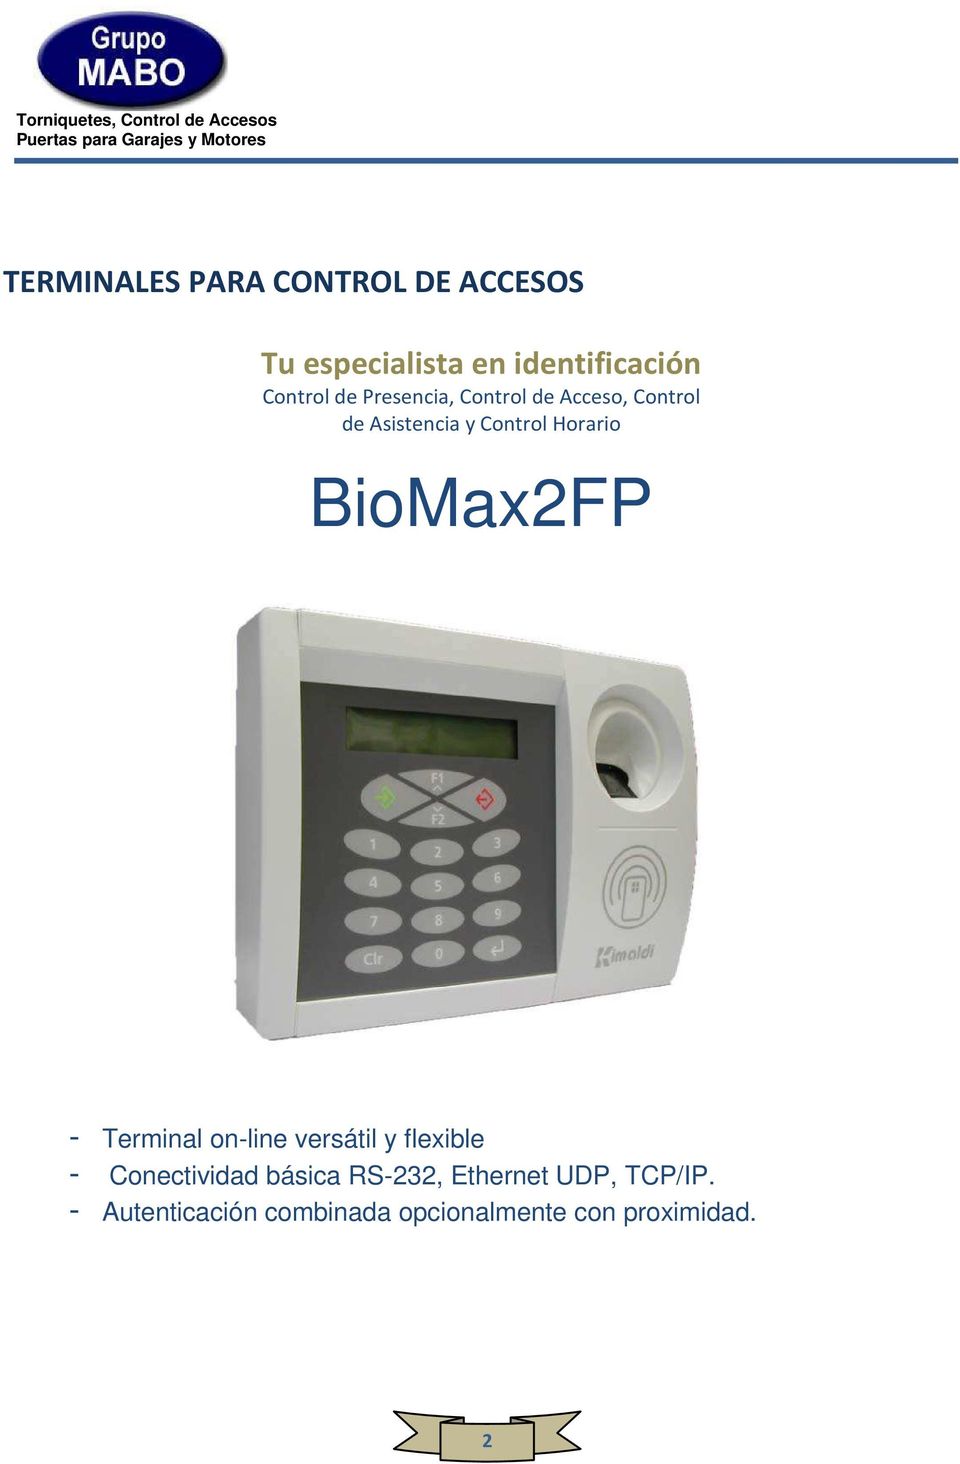 BioMax2FP - Terminal on-line versátil y flexible - Conectividad básica